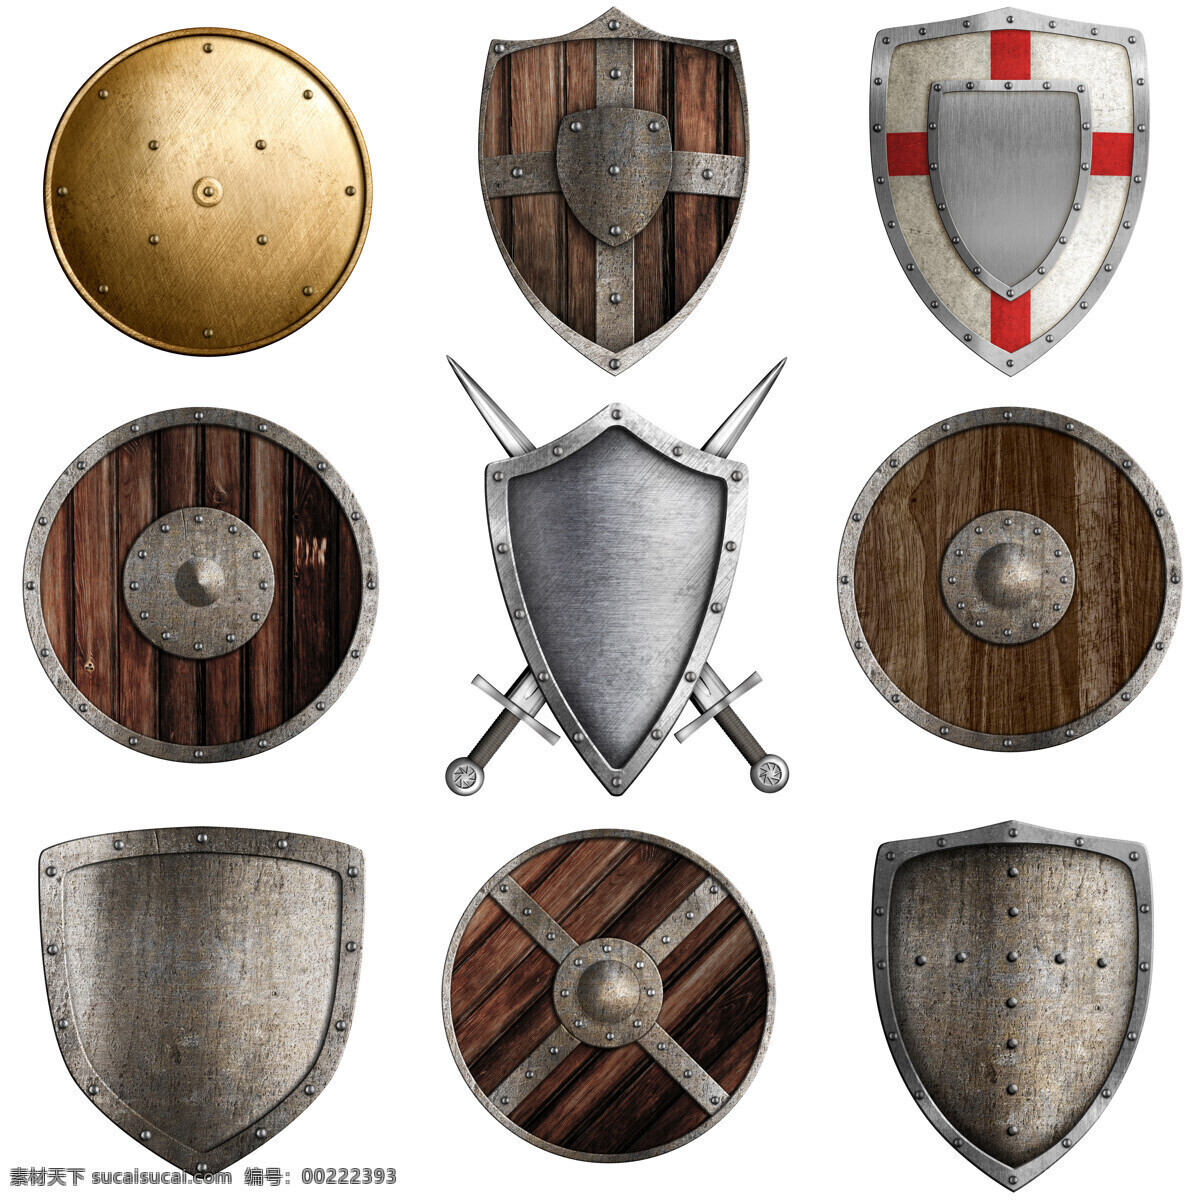 各式 盾牌 古代盾牌 军事装备 木板盾牌 金属盾牌 金色盾牌 其他类别 生活百科